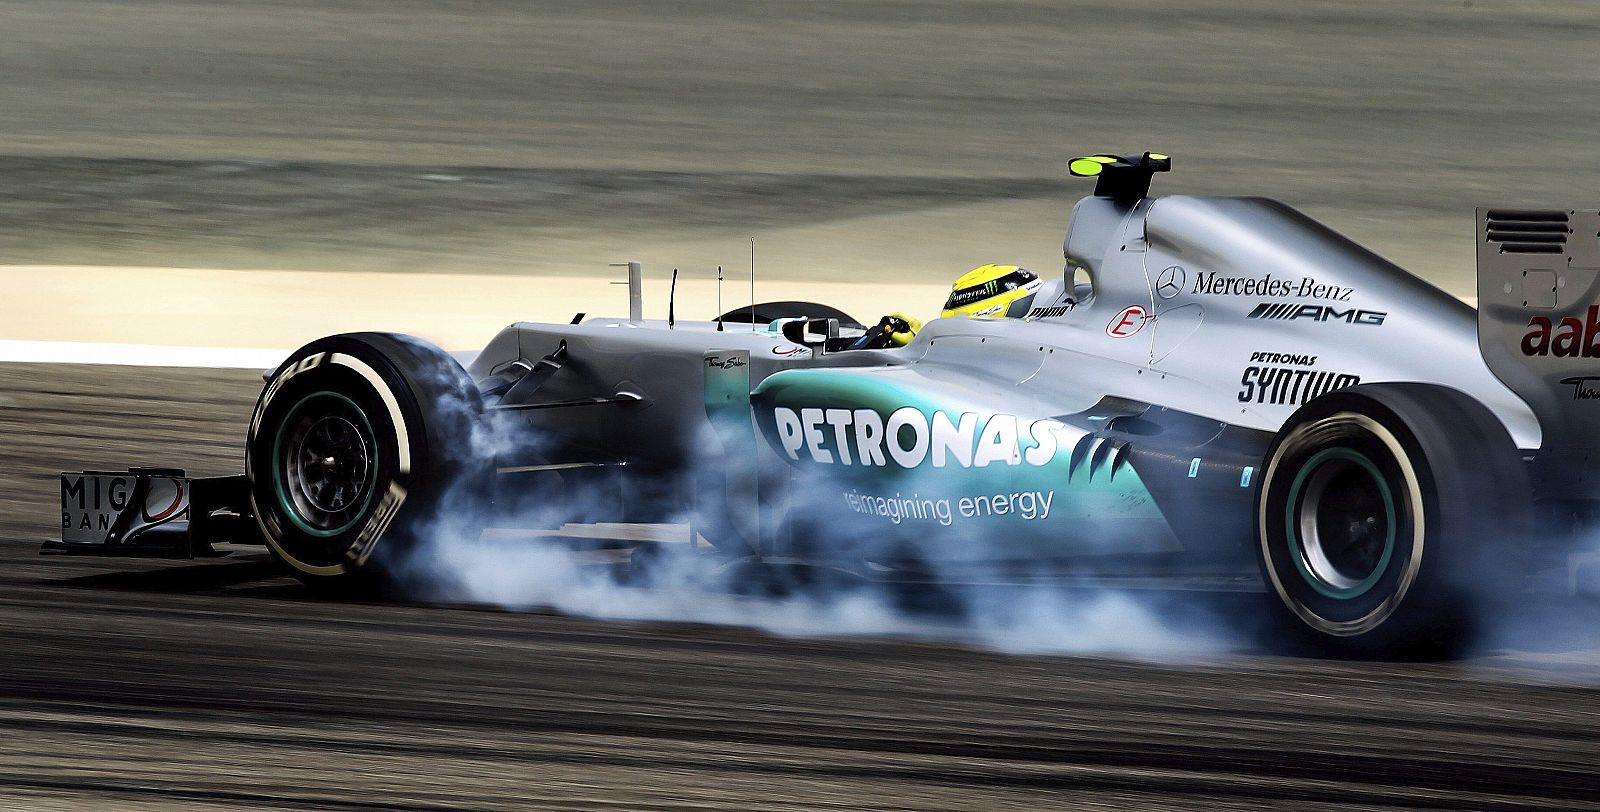 El piloto alemán de Fórmula Uno Nico Rosberg.